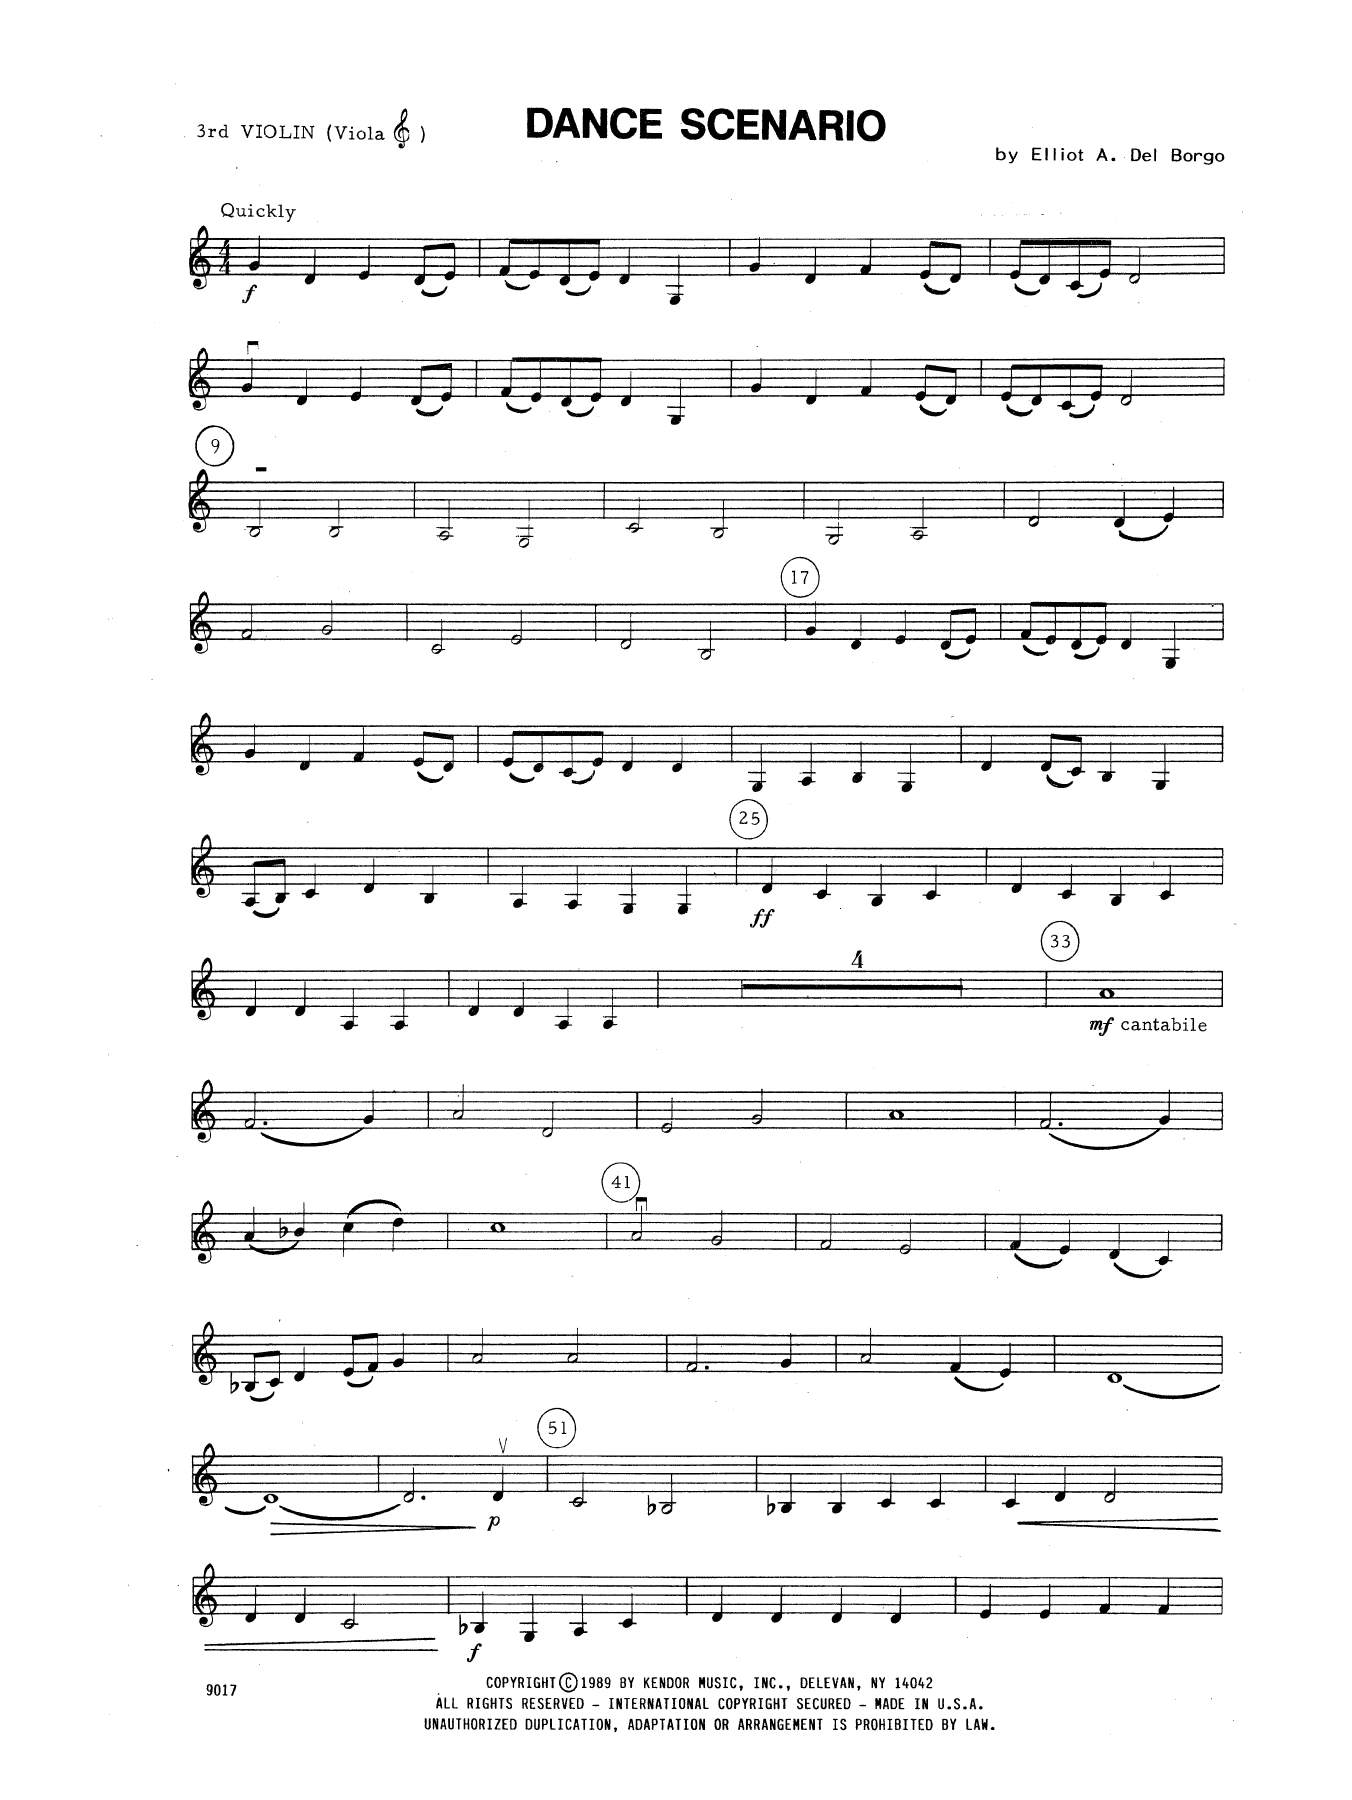 Download Elliot A. Del Borgo Dance Scenario - Violin 3 (Viola T.C.) Sheet Music